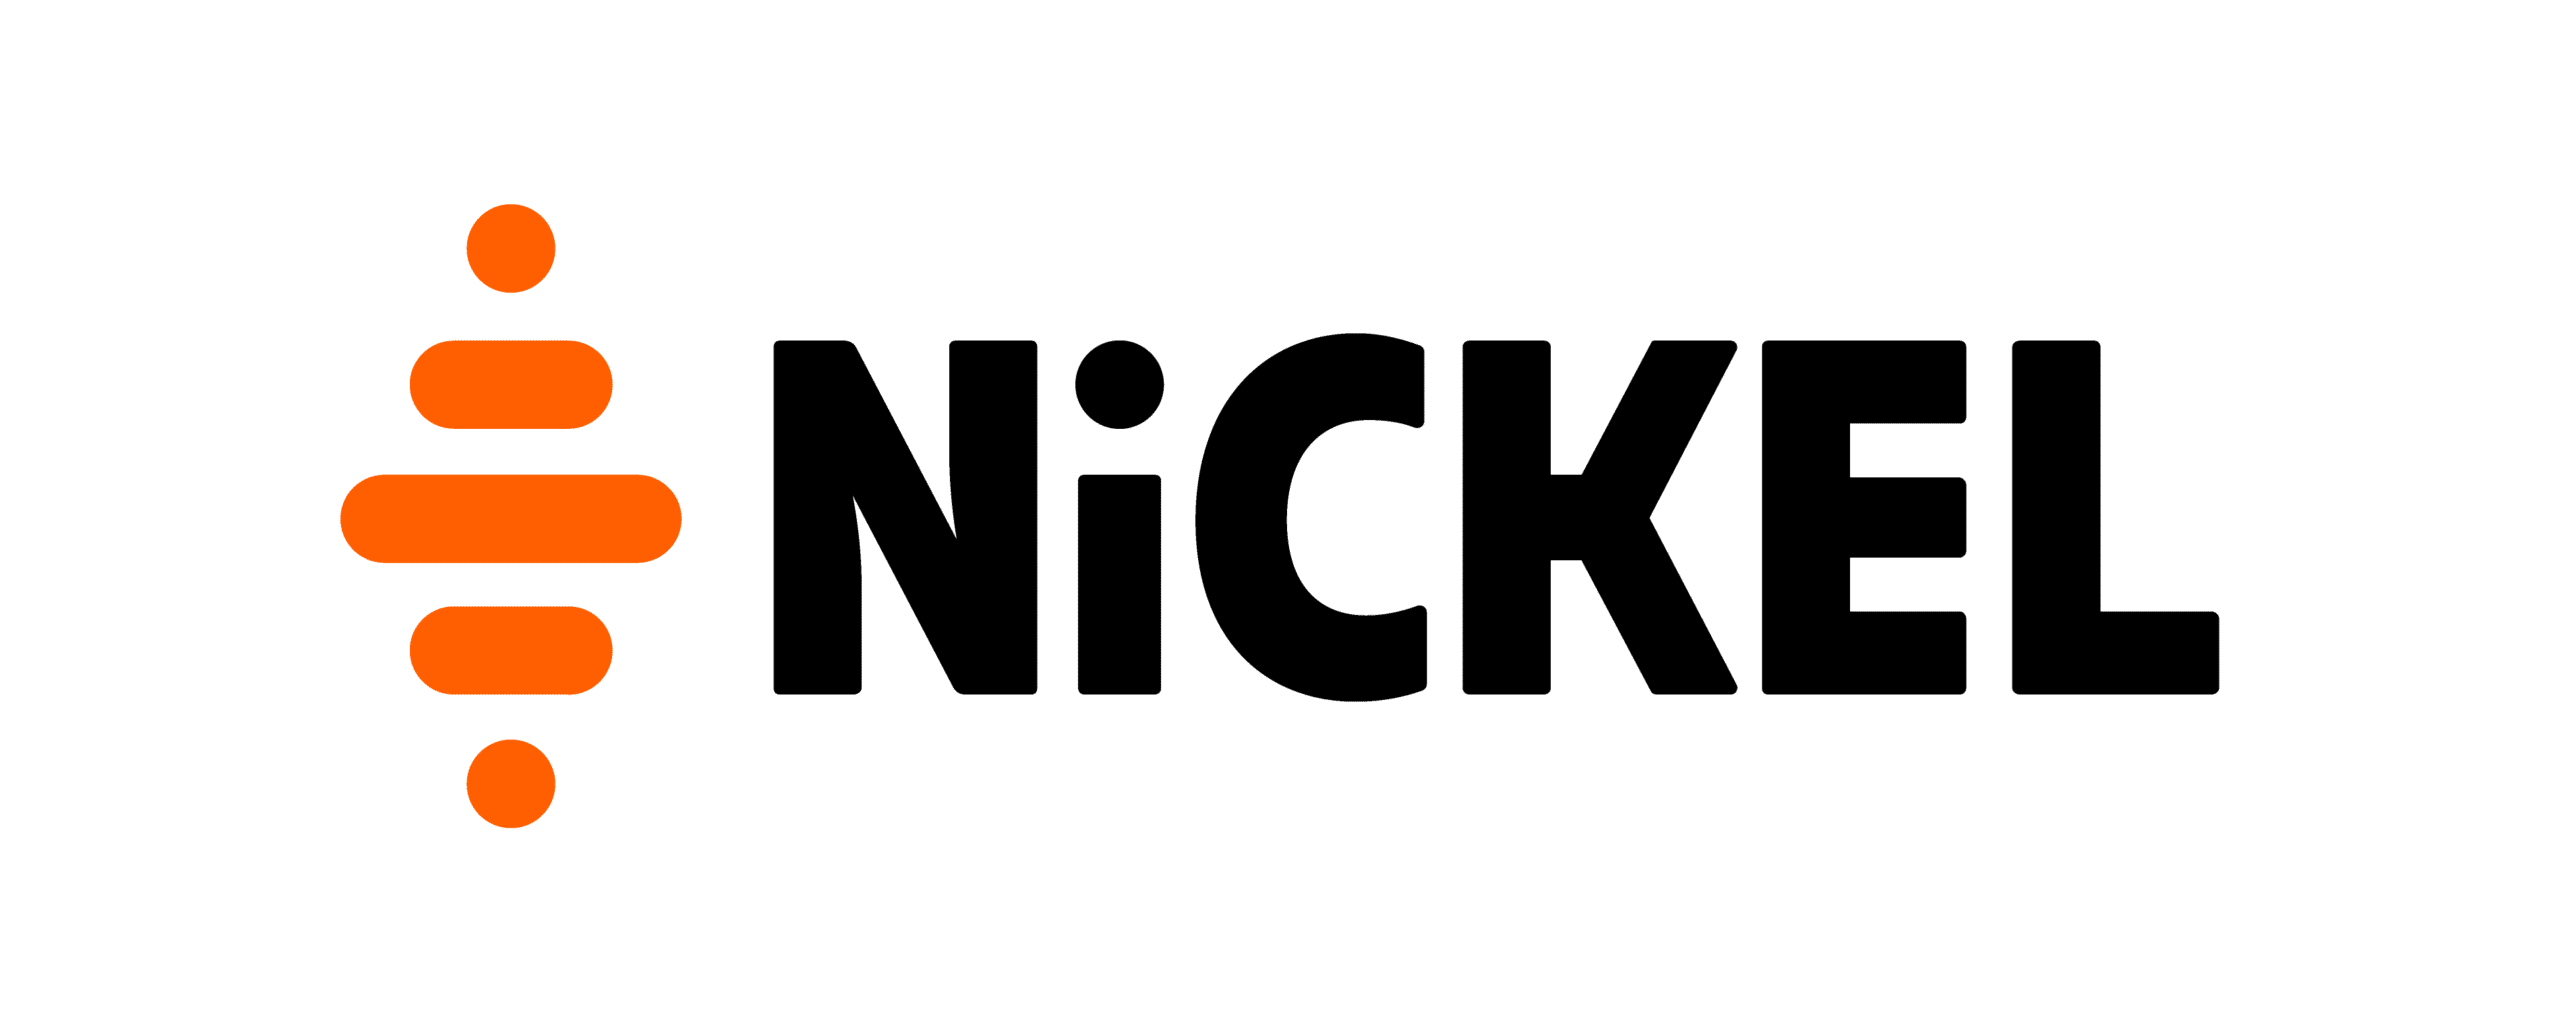 Nickel – Le Compte pour les jeunes